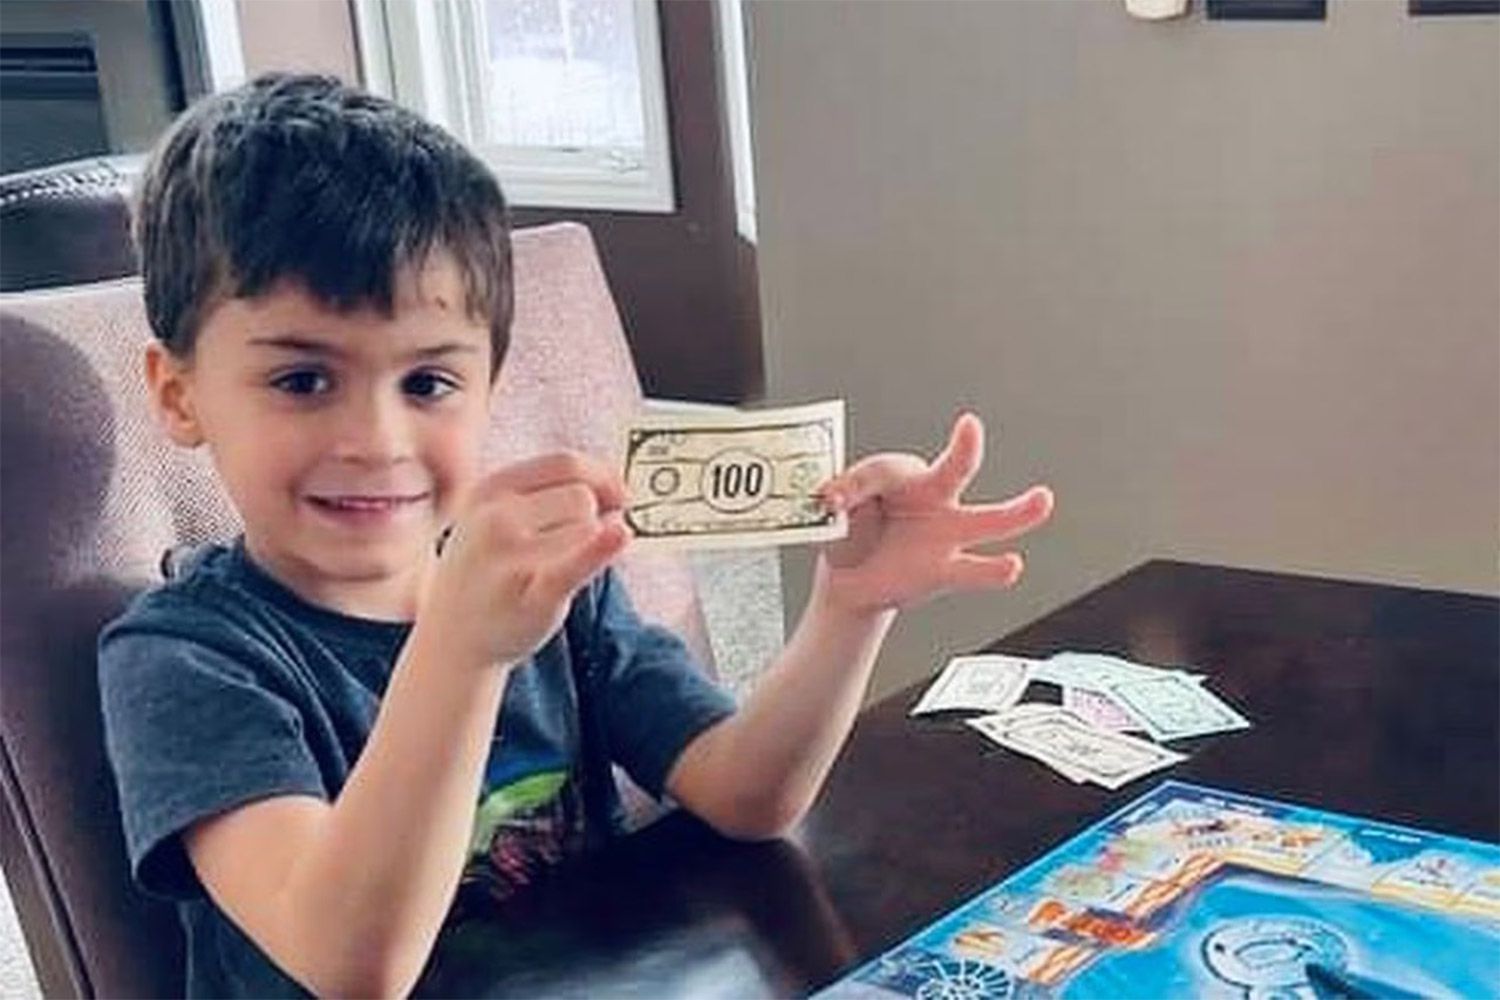 Garoto de Michigan de 6 anos pede US$ 1.000 em comida no Grubhub com o telefone de seu pai